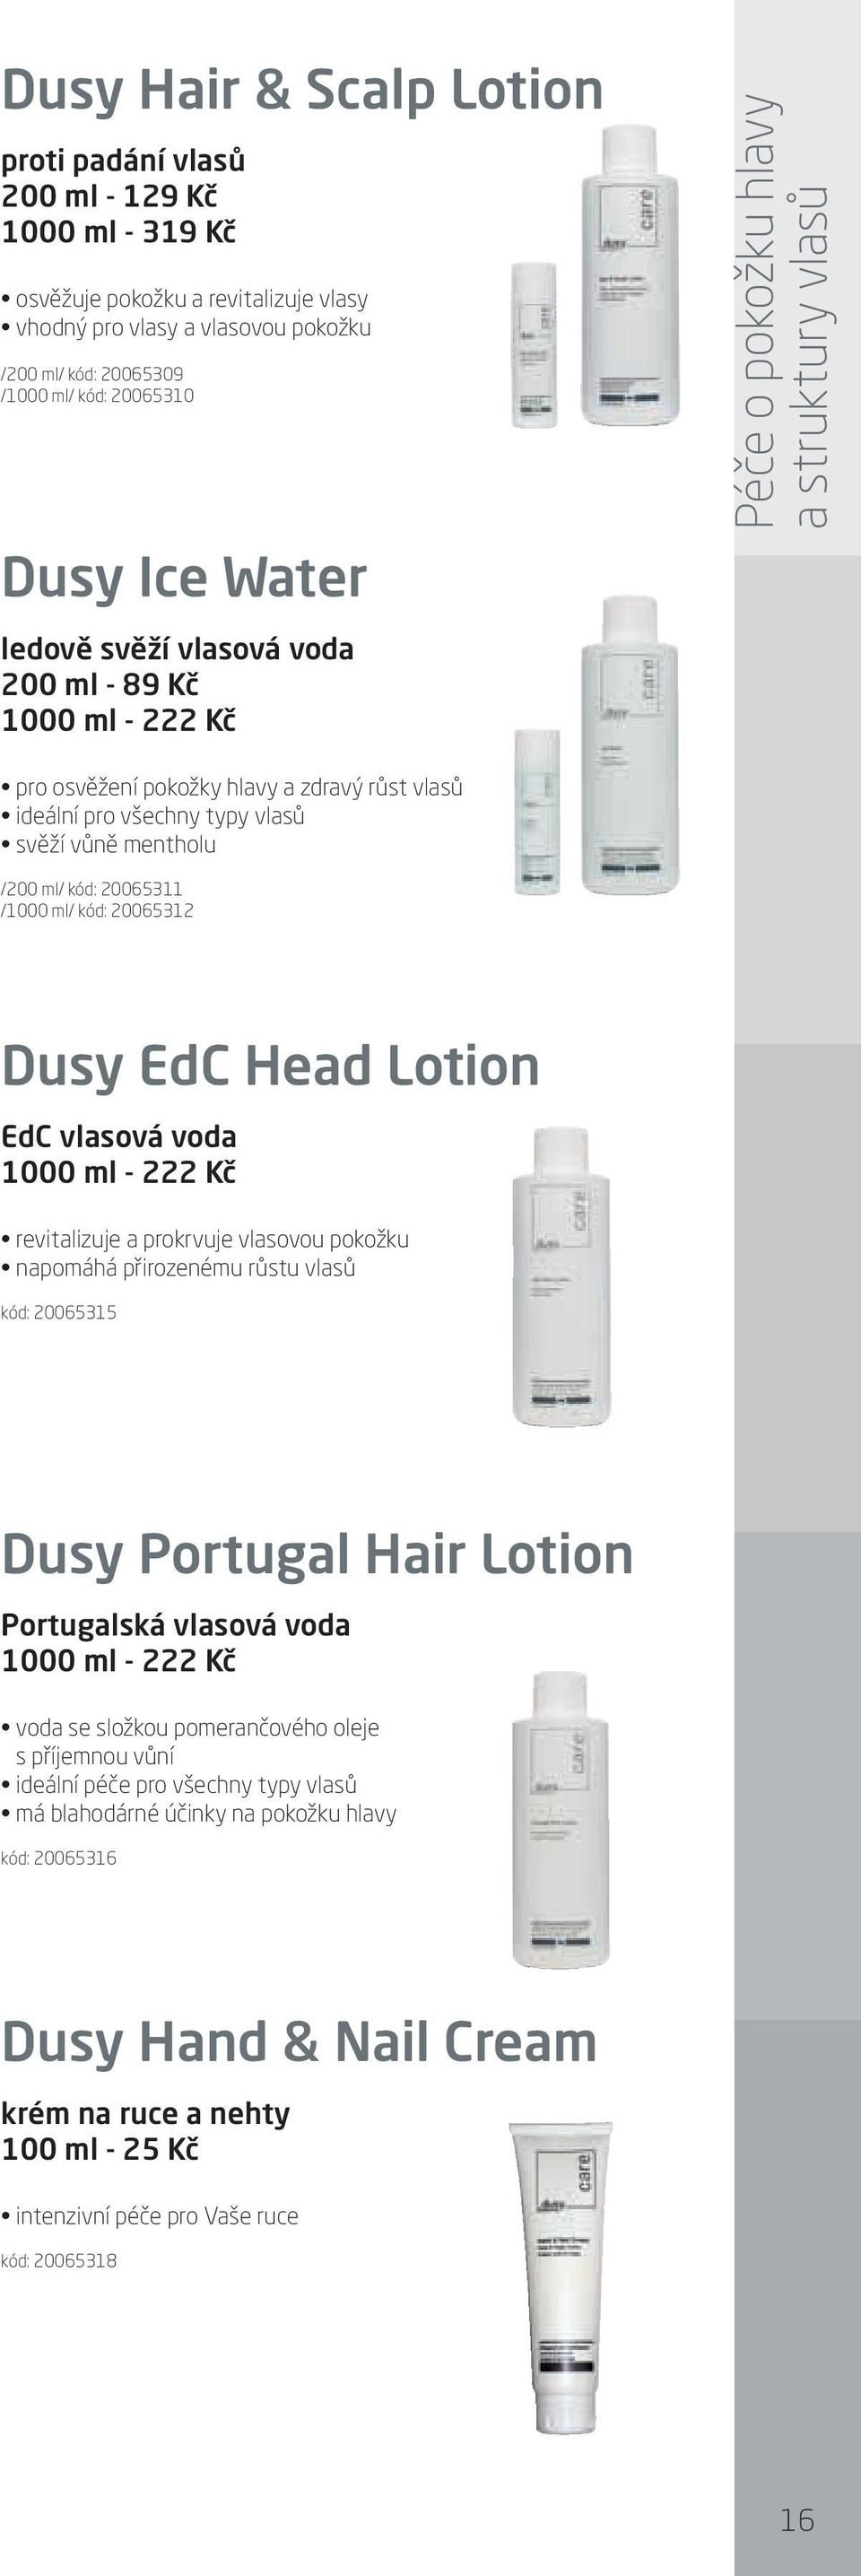 vůně mentholu /200 ml/ kód: 20065311 /1000 ml/ kód: 20065312 Dusy EdC Head Lotion EdC vlasová voda 1000 ml - 222 Kč revitalizuje a prokrvuje vlasovou pokožku napomáhá přirozenému růstu vlasů kód: